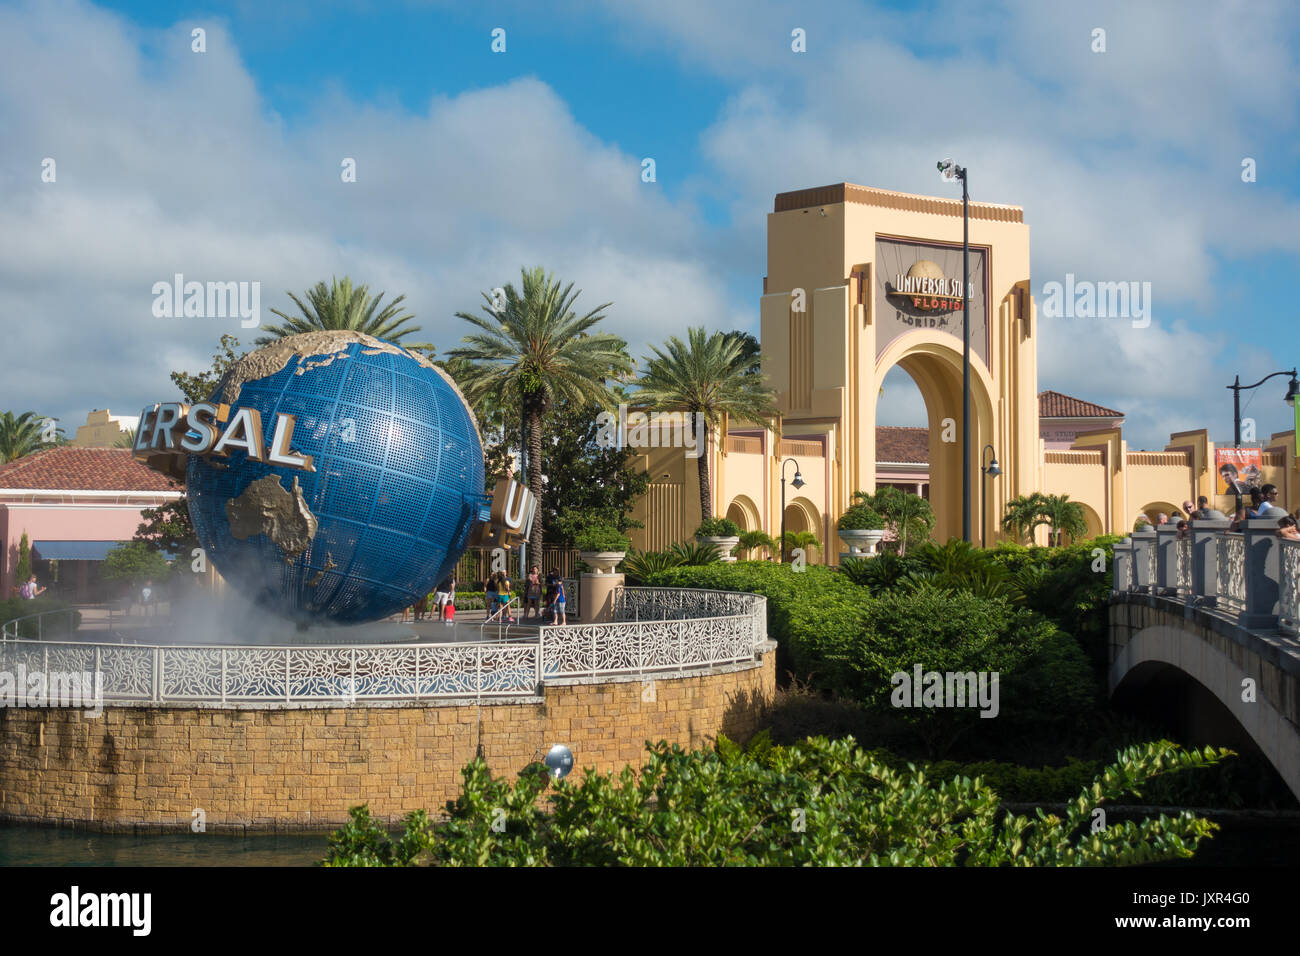 El globo universal en la entrada de Universal Studios Orlando, Florida. Foto de stock